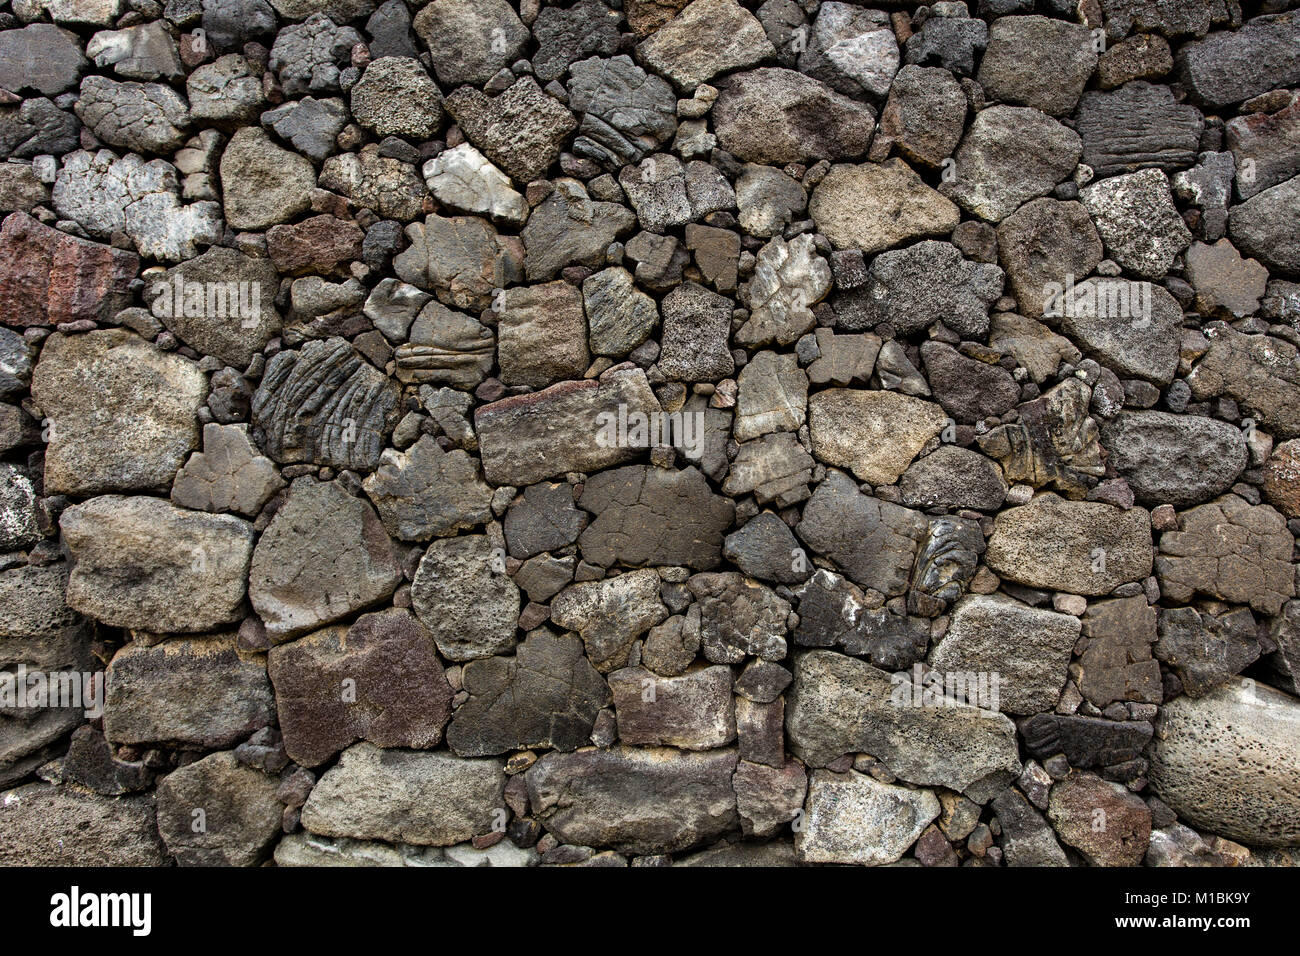 Stone wall made from volcanic rocks of Puuhonua o honaunau, Hawaii Stock Photo